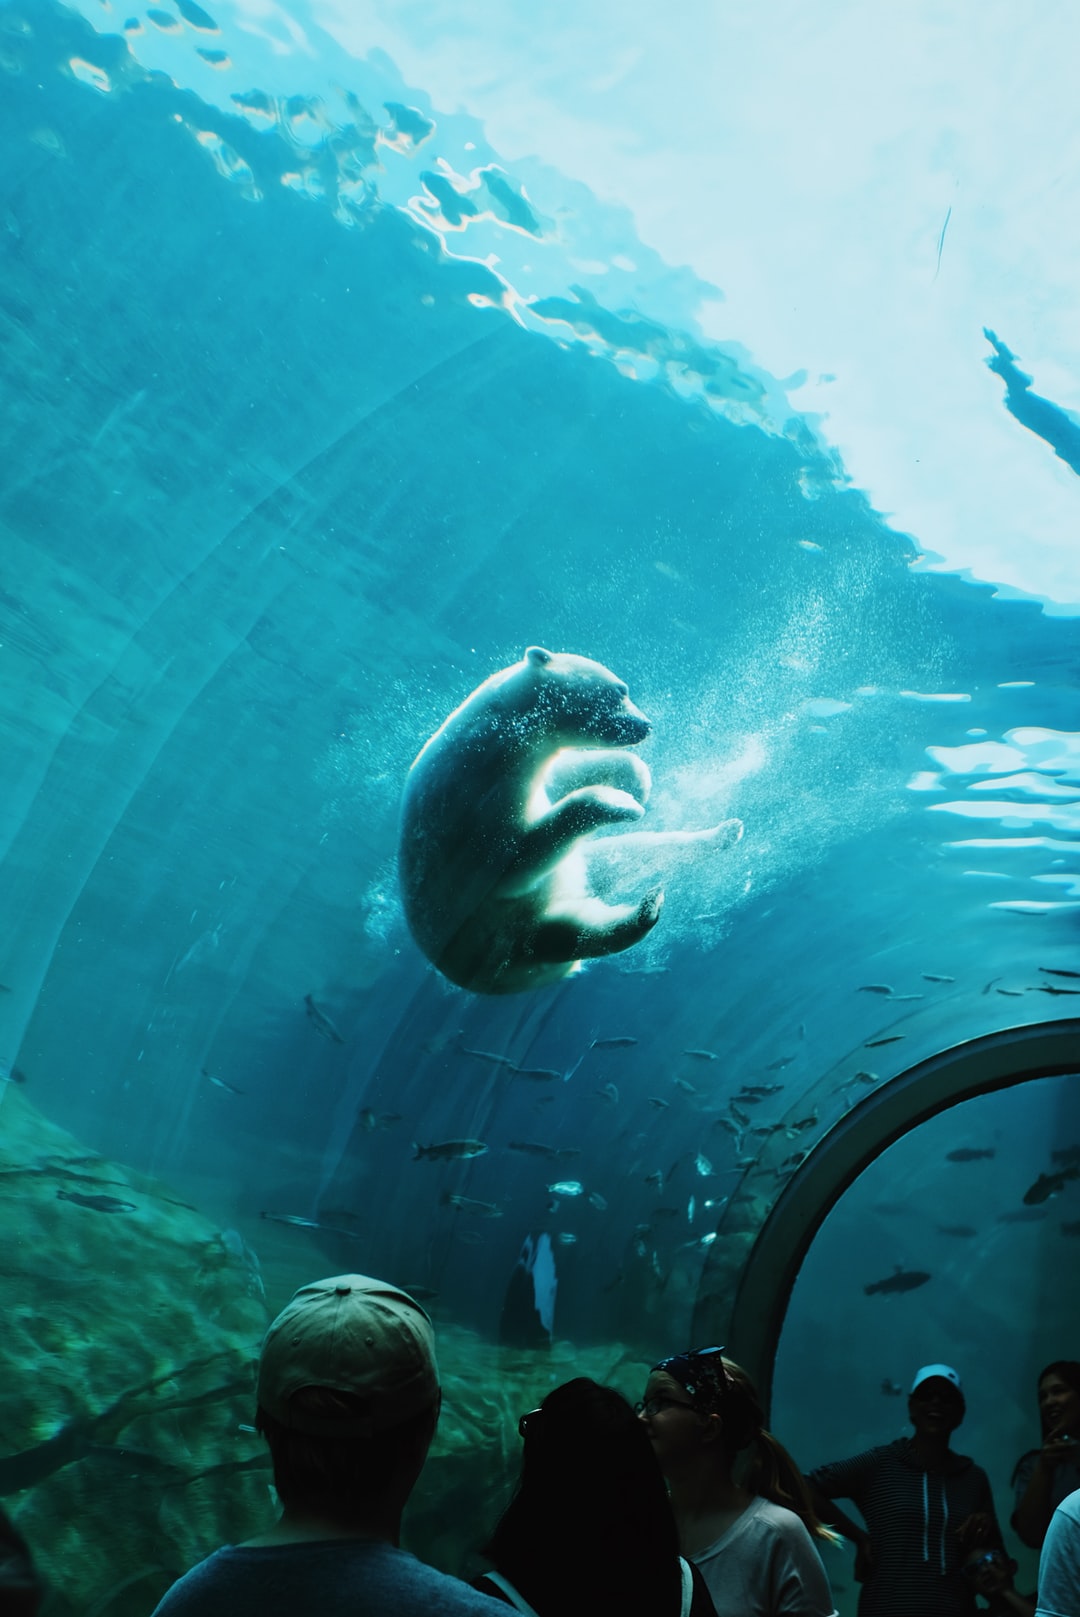 19 wichtige Fragen zu Wie Sehen Schneckeneier Im Aquarium Aus?